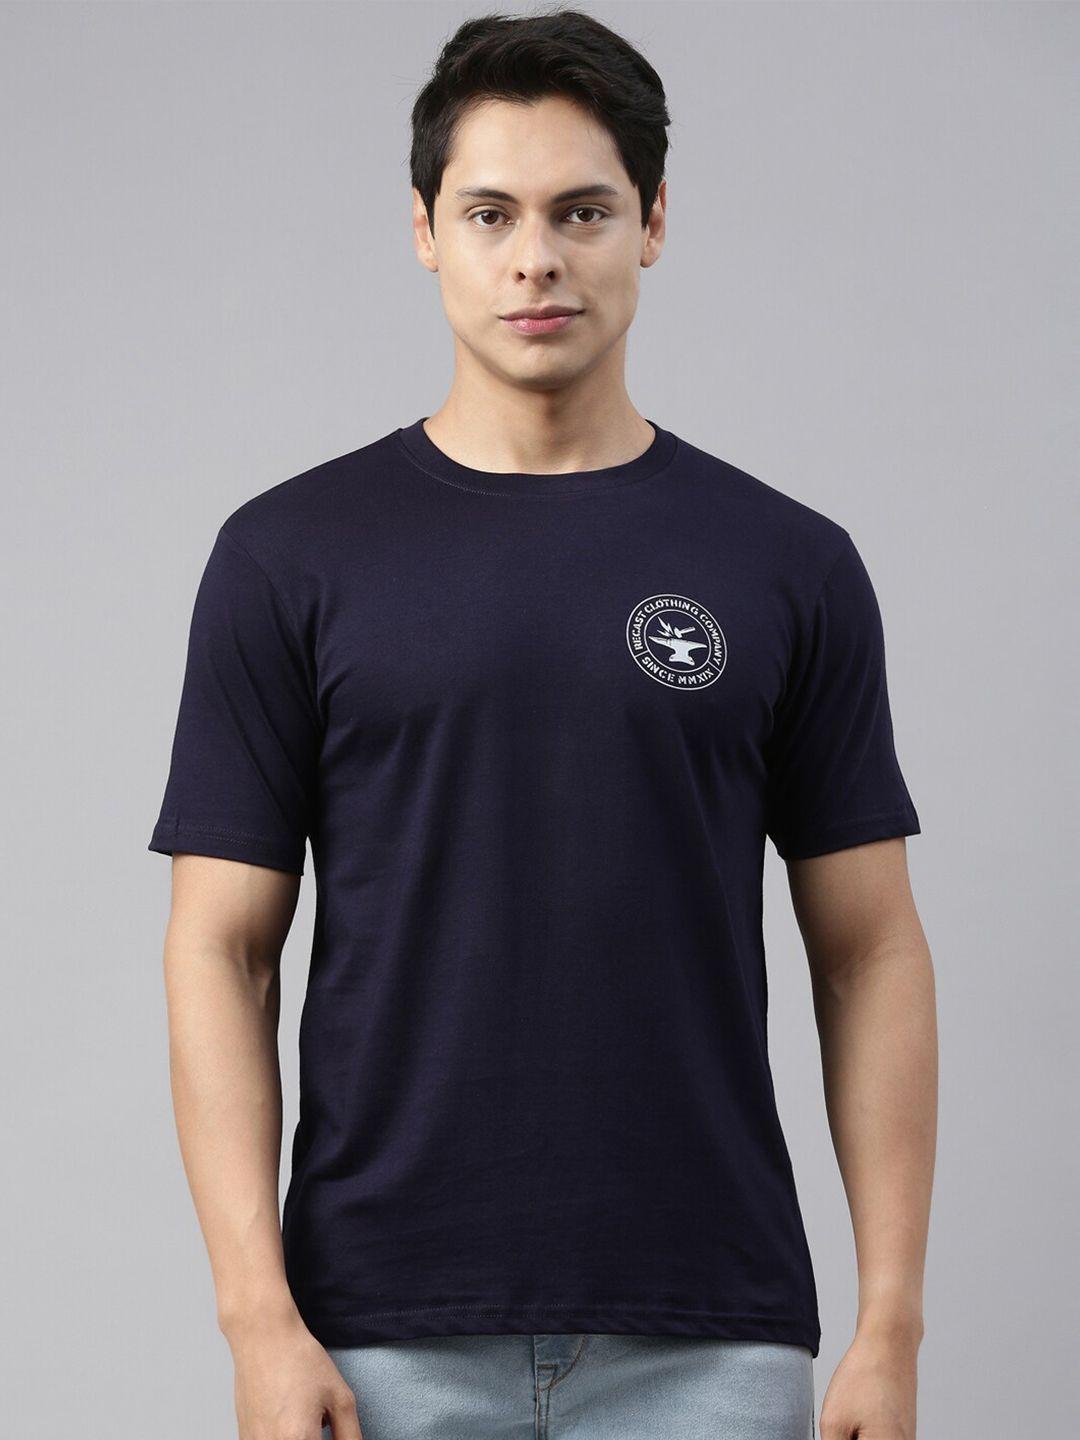 recast-men-navy-blue-solid-pure-cotton-t-shirt